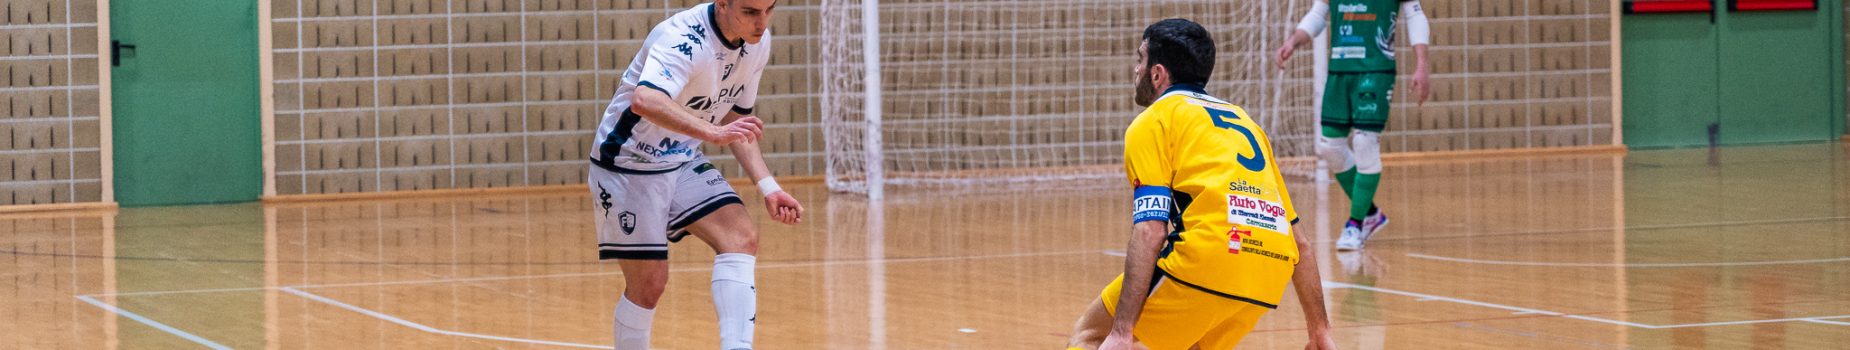 Prepartita Futsal Cesena-Modena Cavezzo